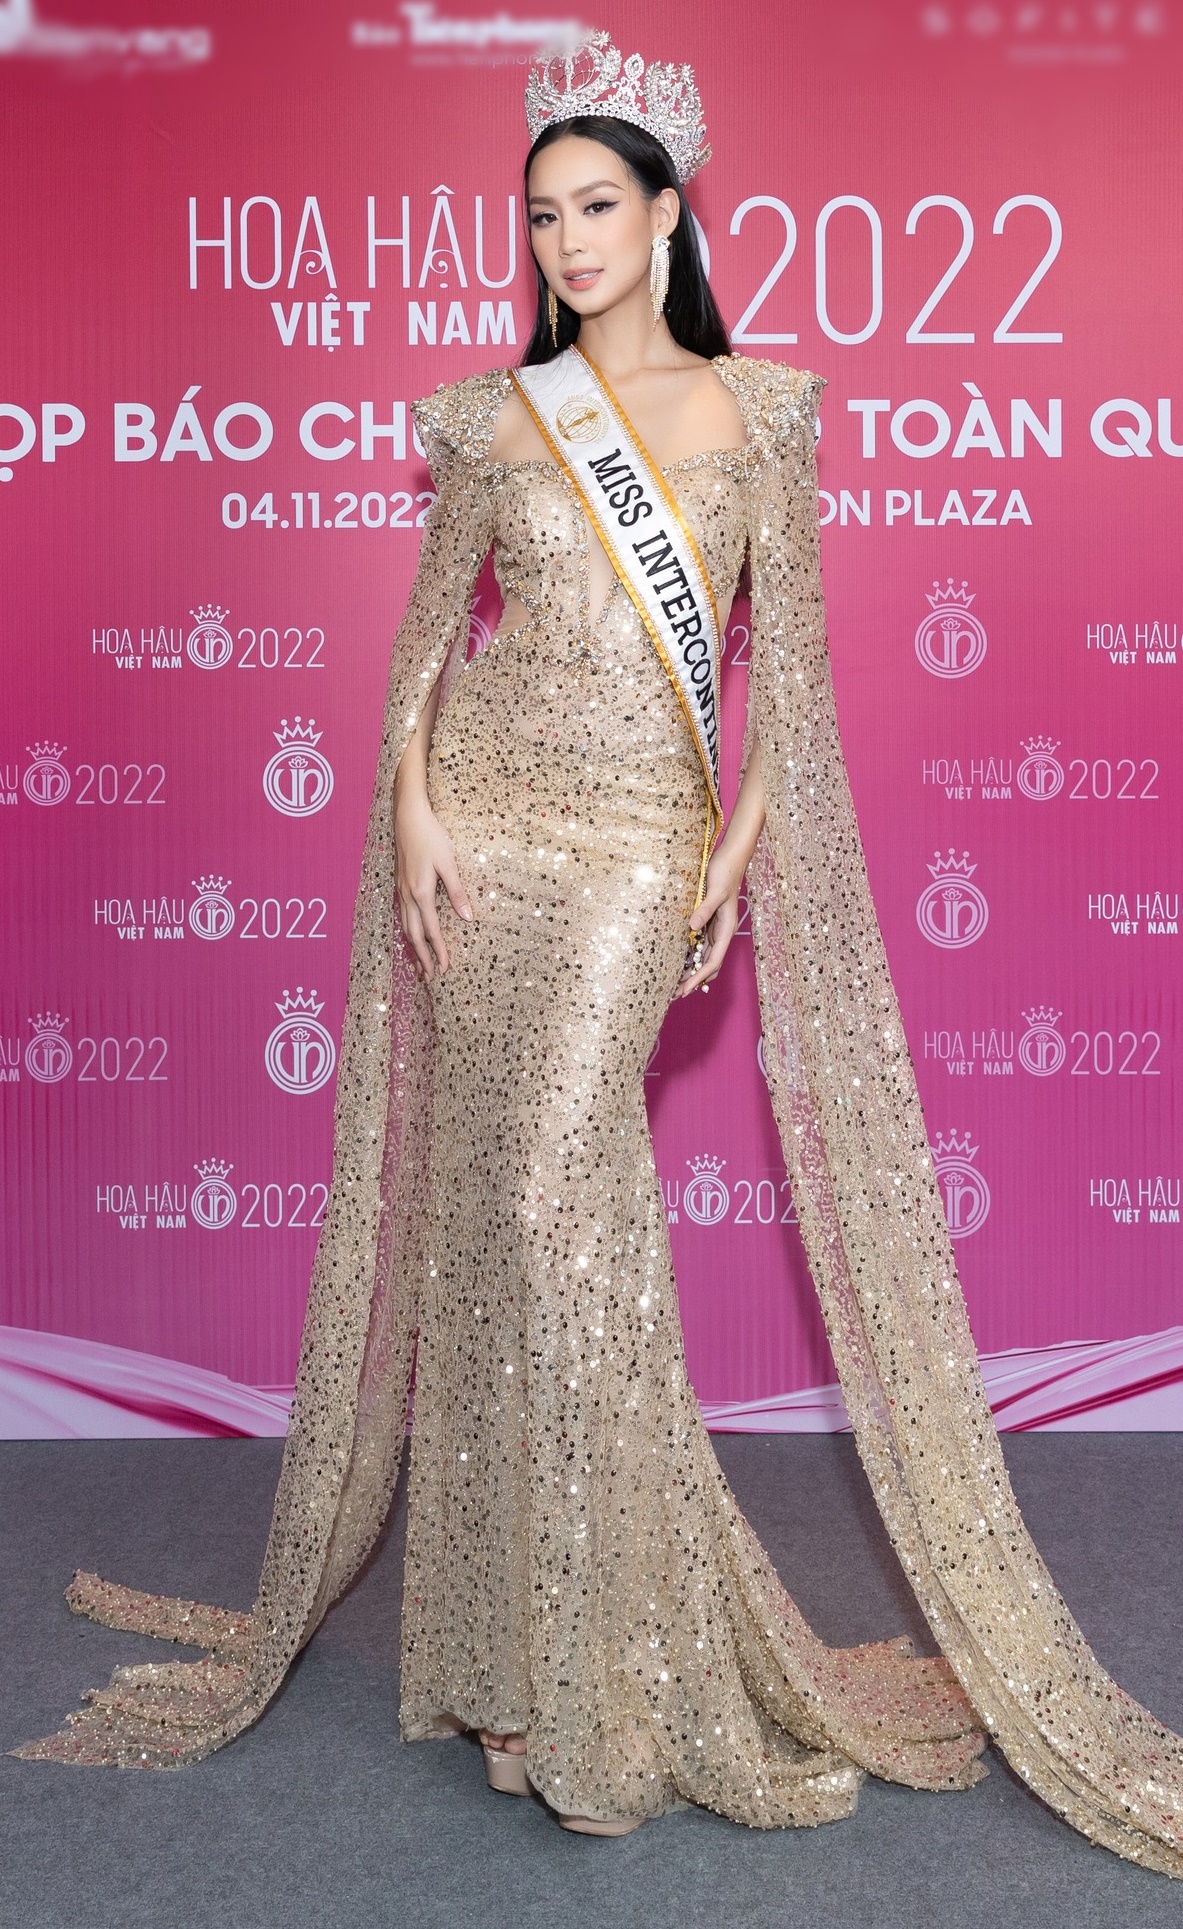 Thảm đỏ 'bất ổn' của Hoa hậu Việt Nam: Đỗ Hà diện quần khó hiểu, Thiên Ân bị chê 'sến' - ảnh 5